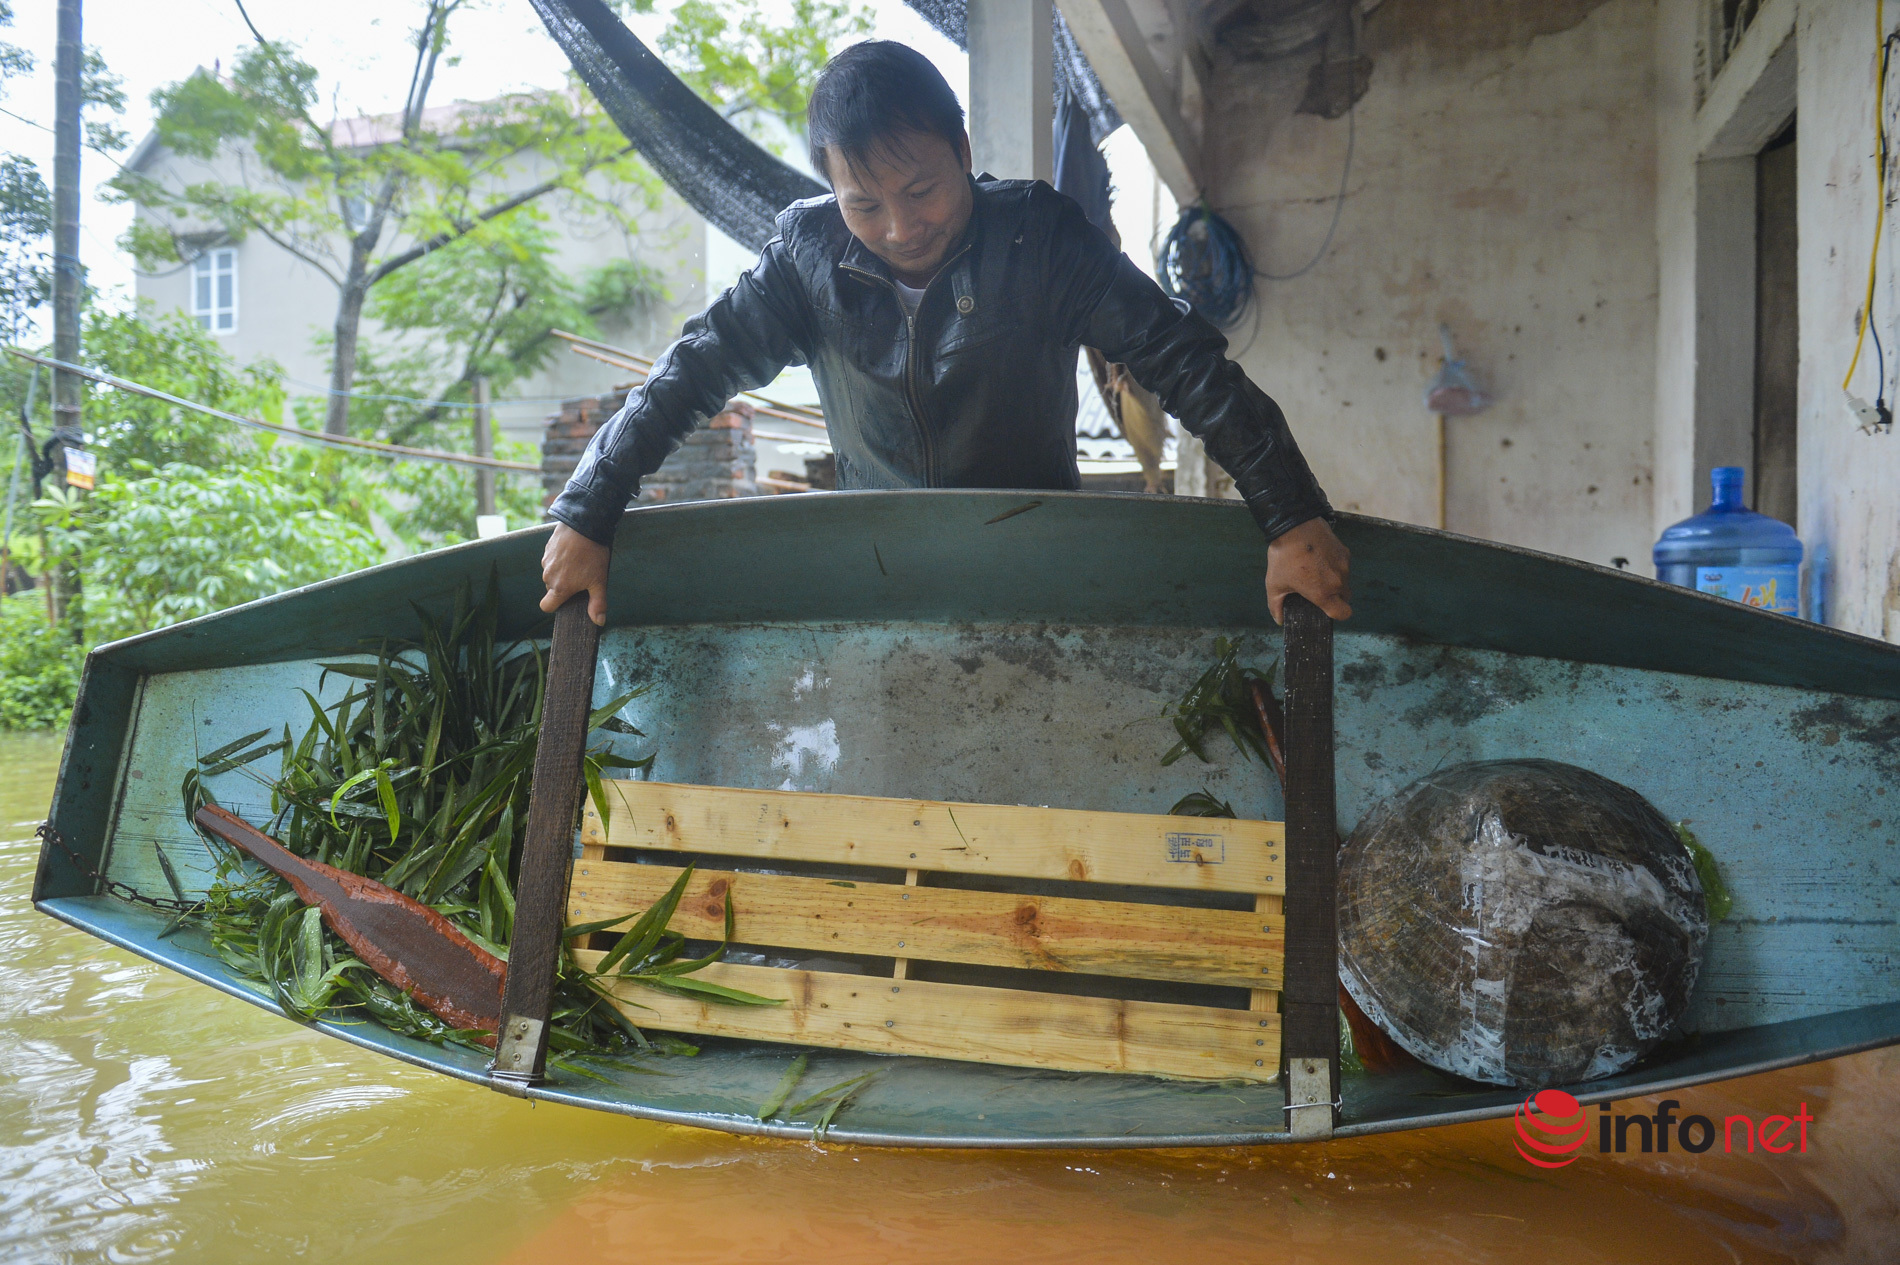 Hà Nội: Nước sông lên cao, hàng trăm hộ dân ở Chương Mỹ bị ngập nặng